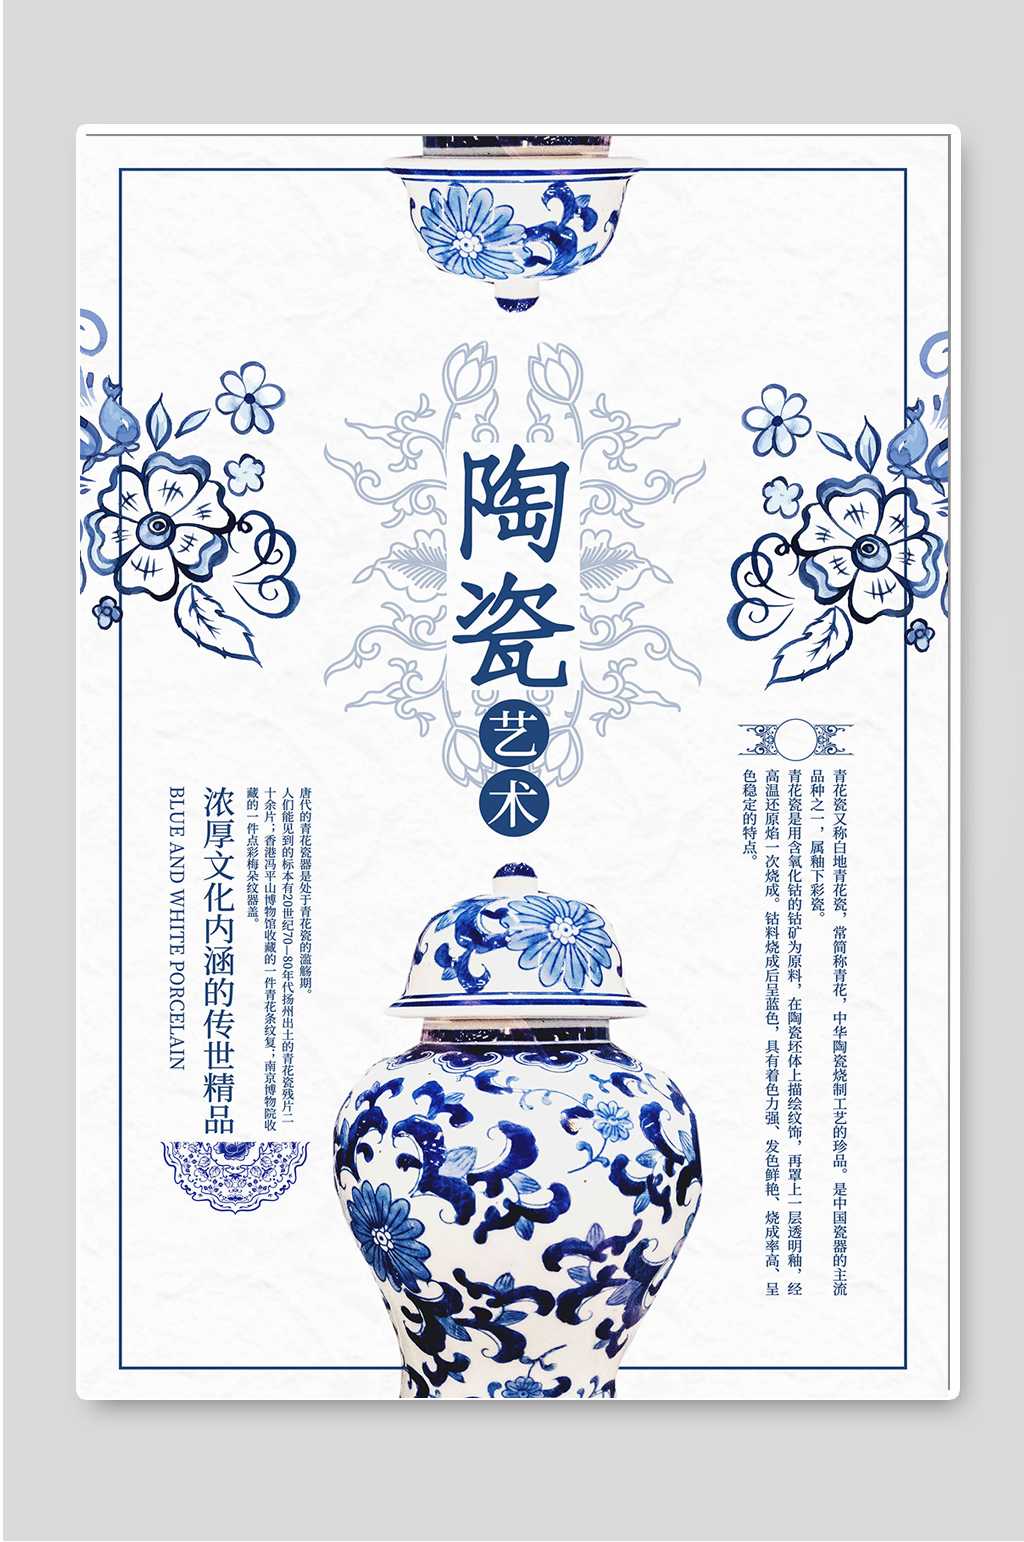 陶瓷艺术创意中国风宣传海报